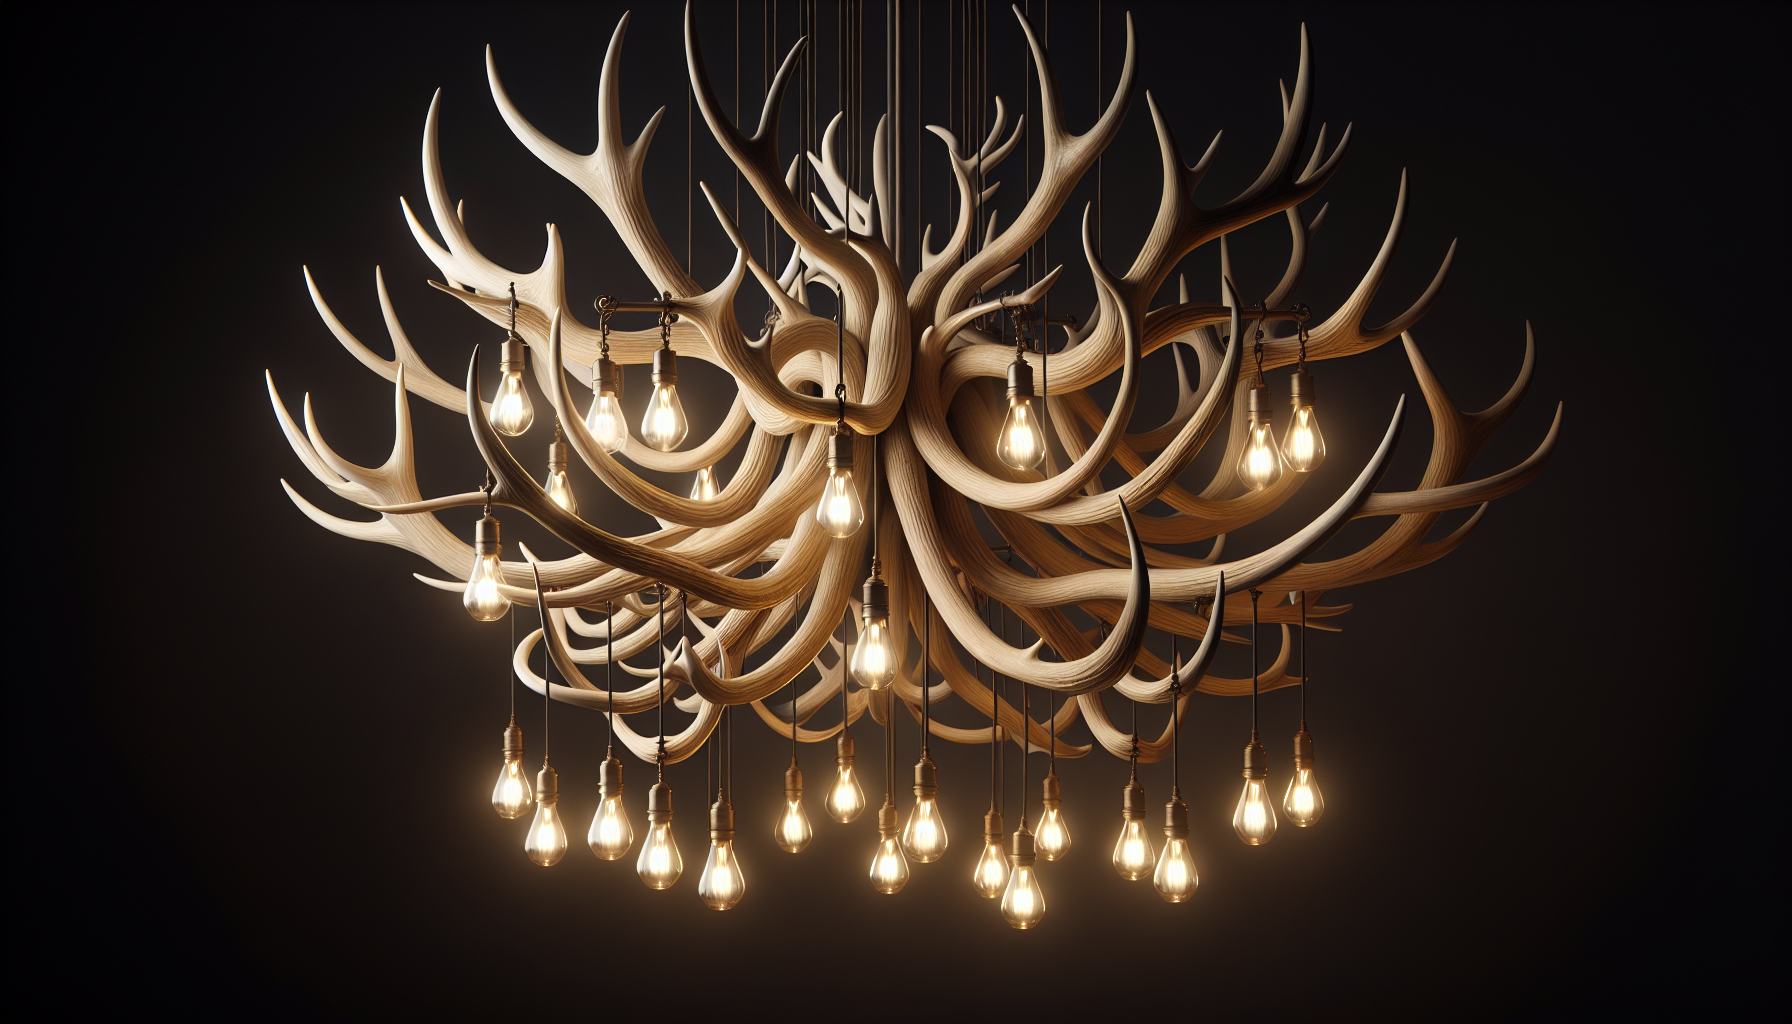 Deer antler chandelier design